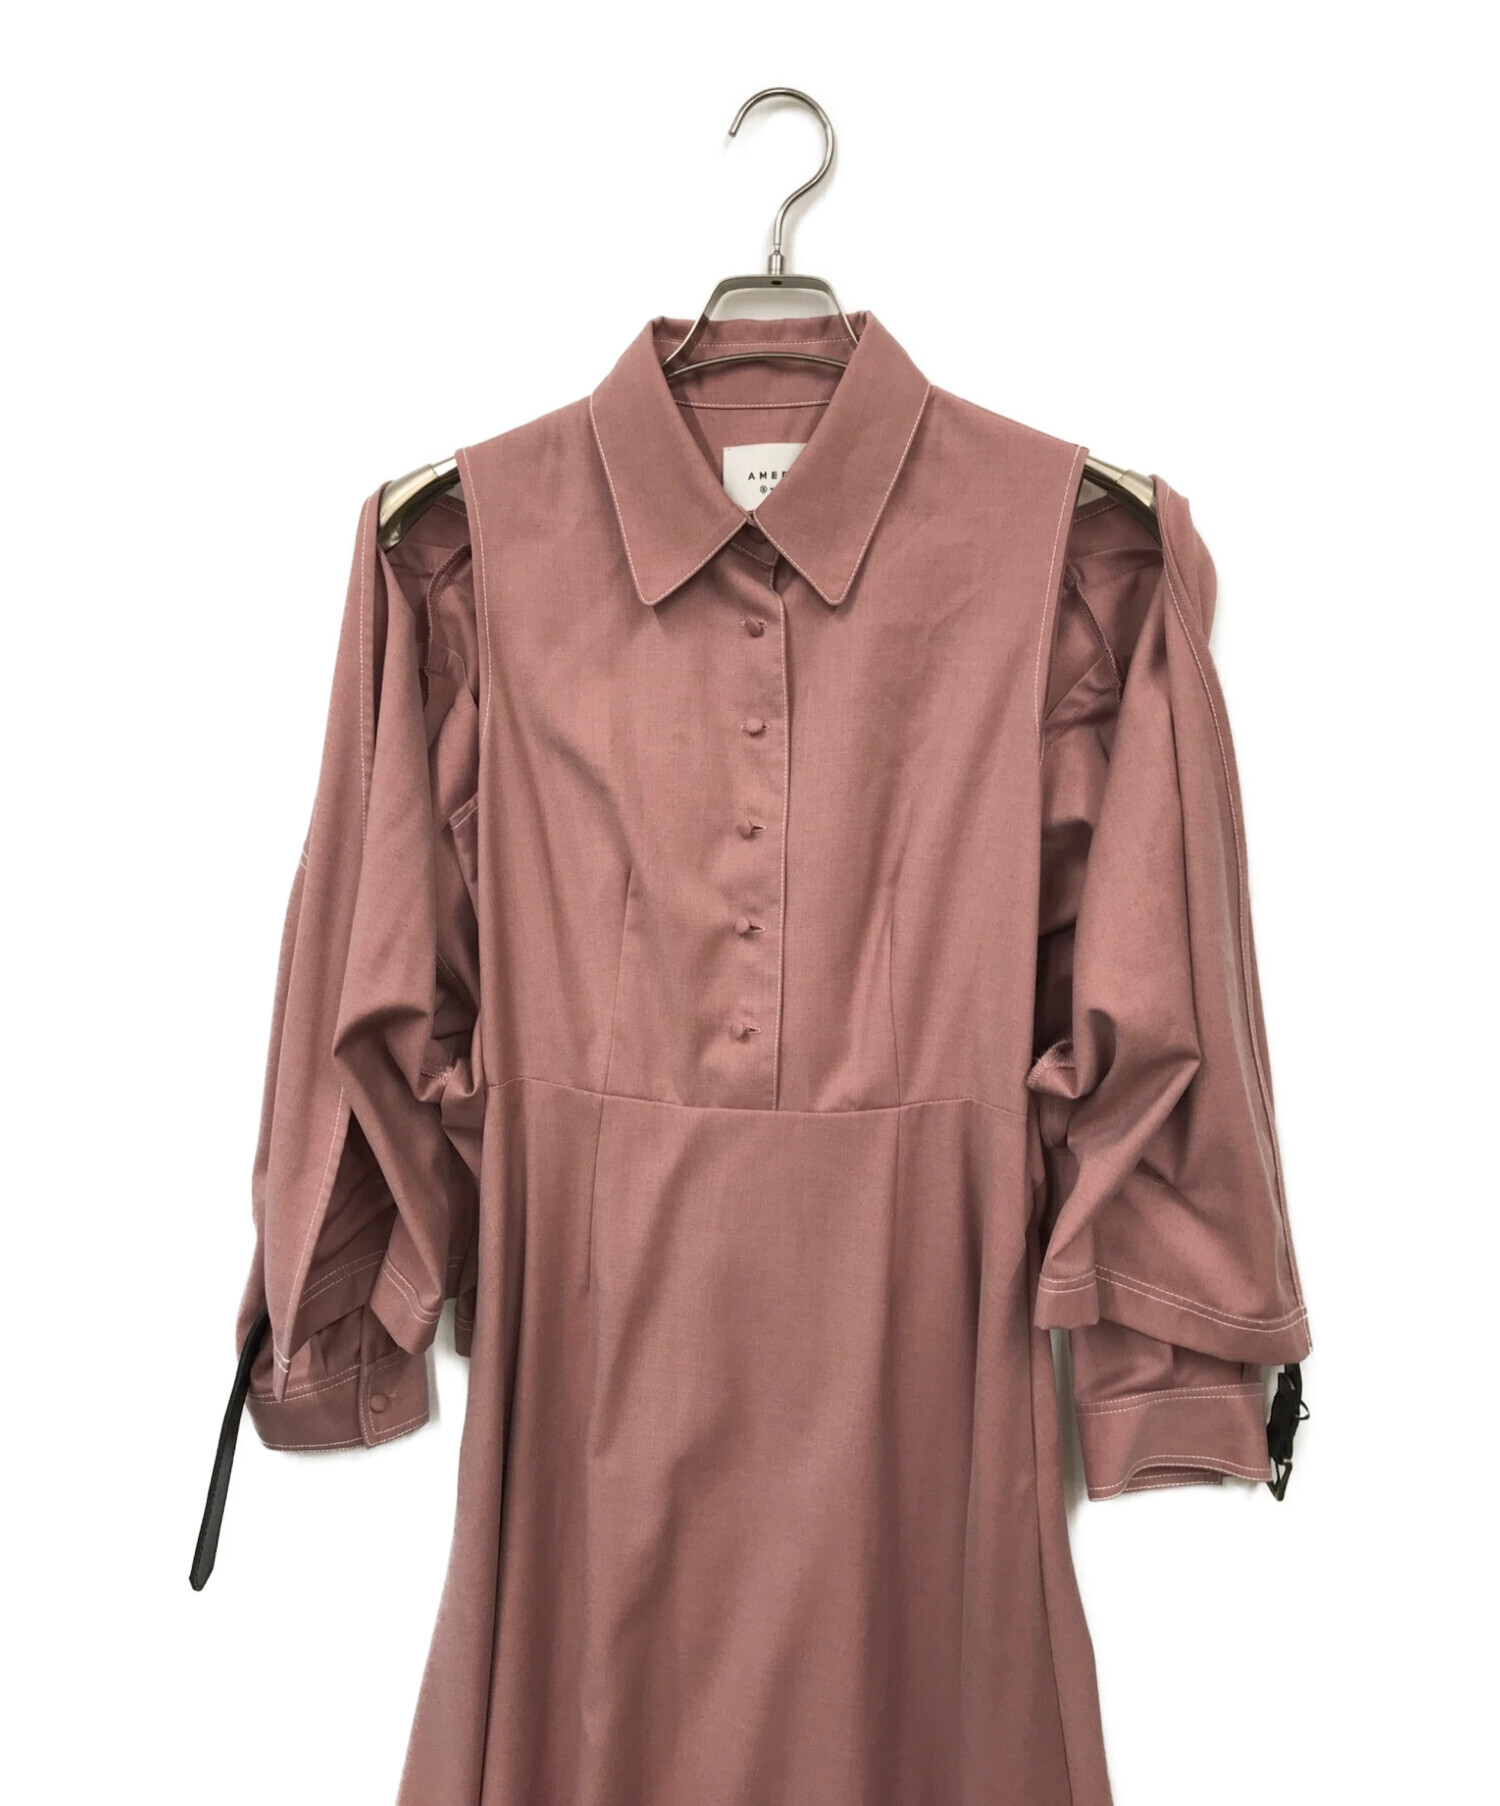 Ameri (アメリ) GENTLEWOMAN OVERLAP DRESS( ジェントルウーマンオーバーラップドレス) ピンク サイズ:S